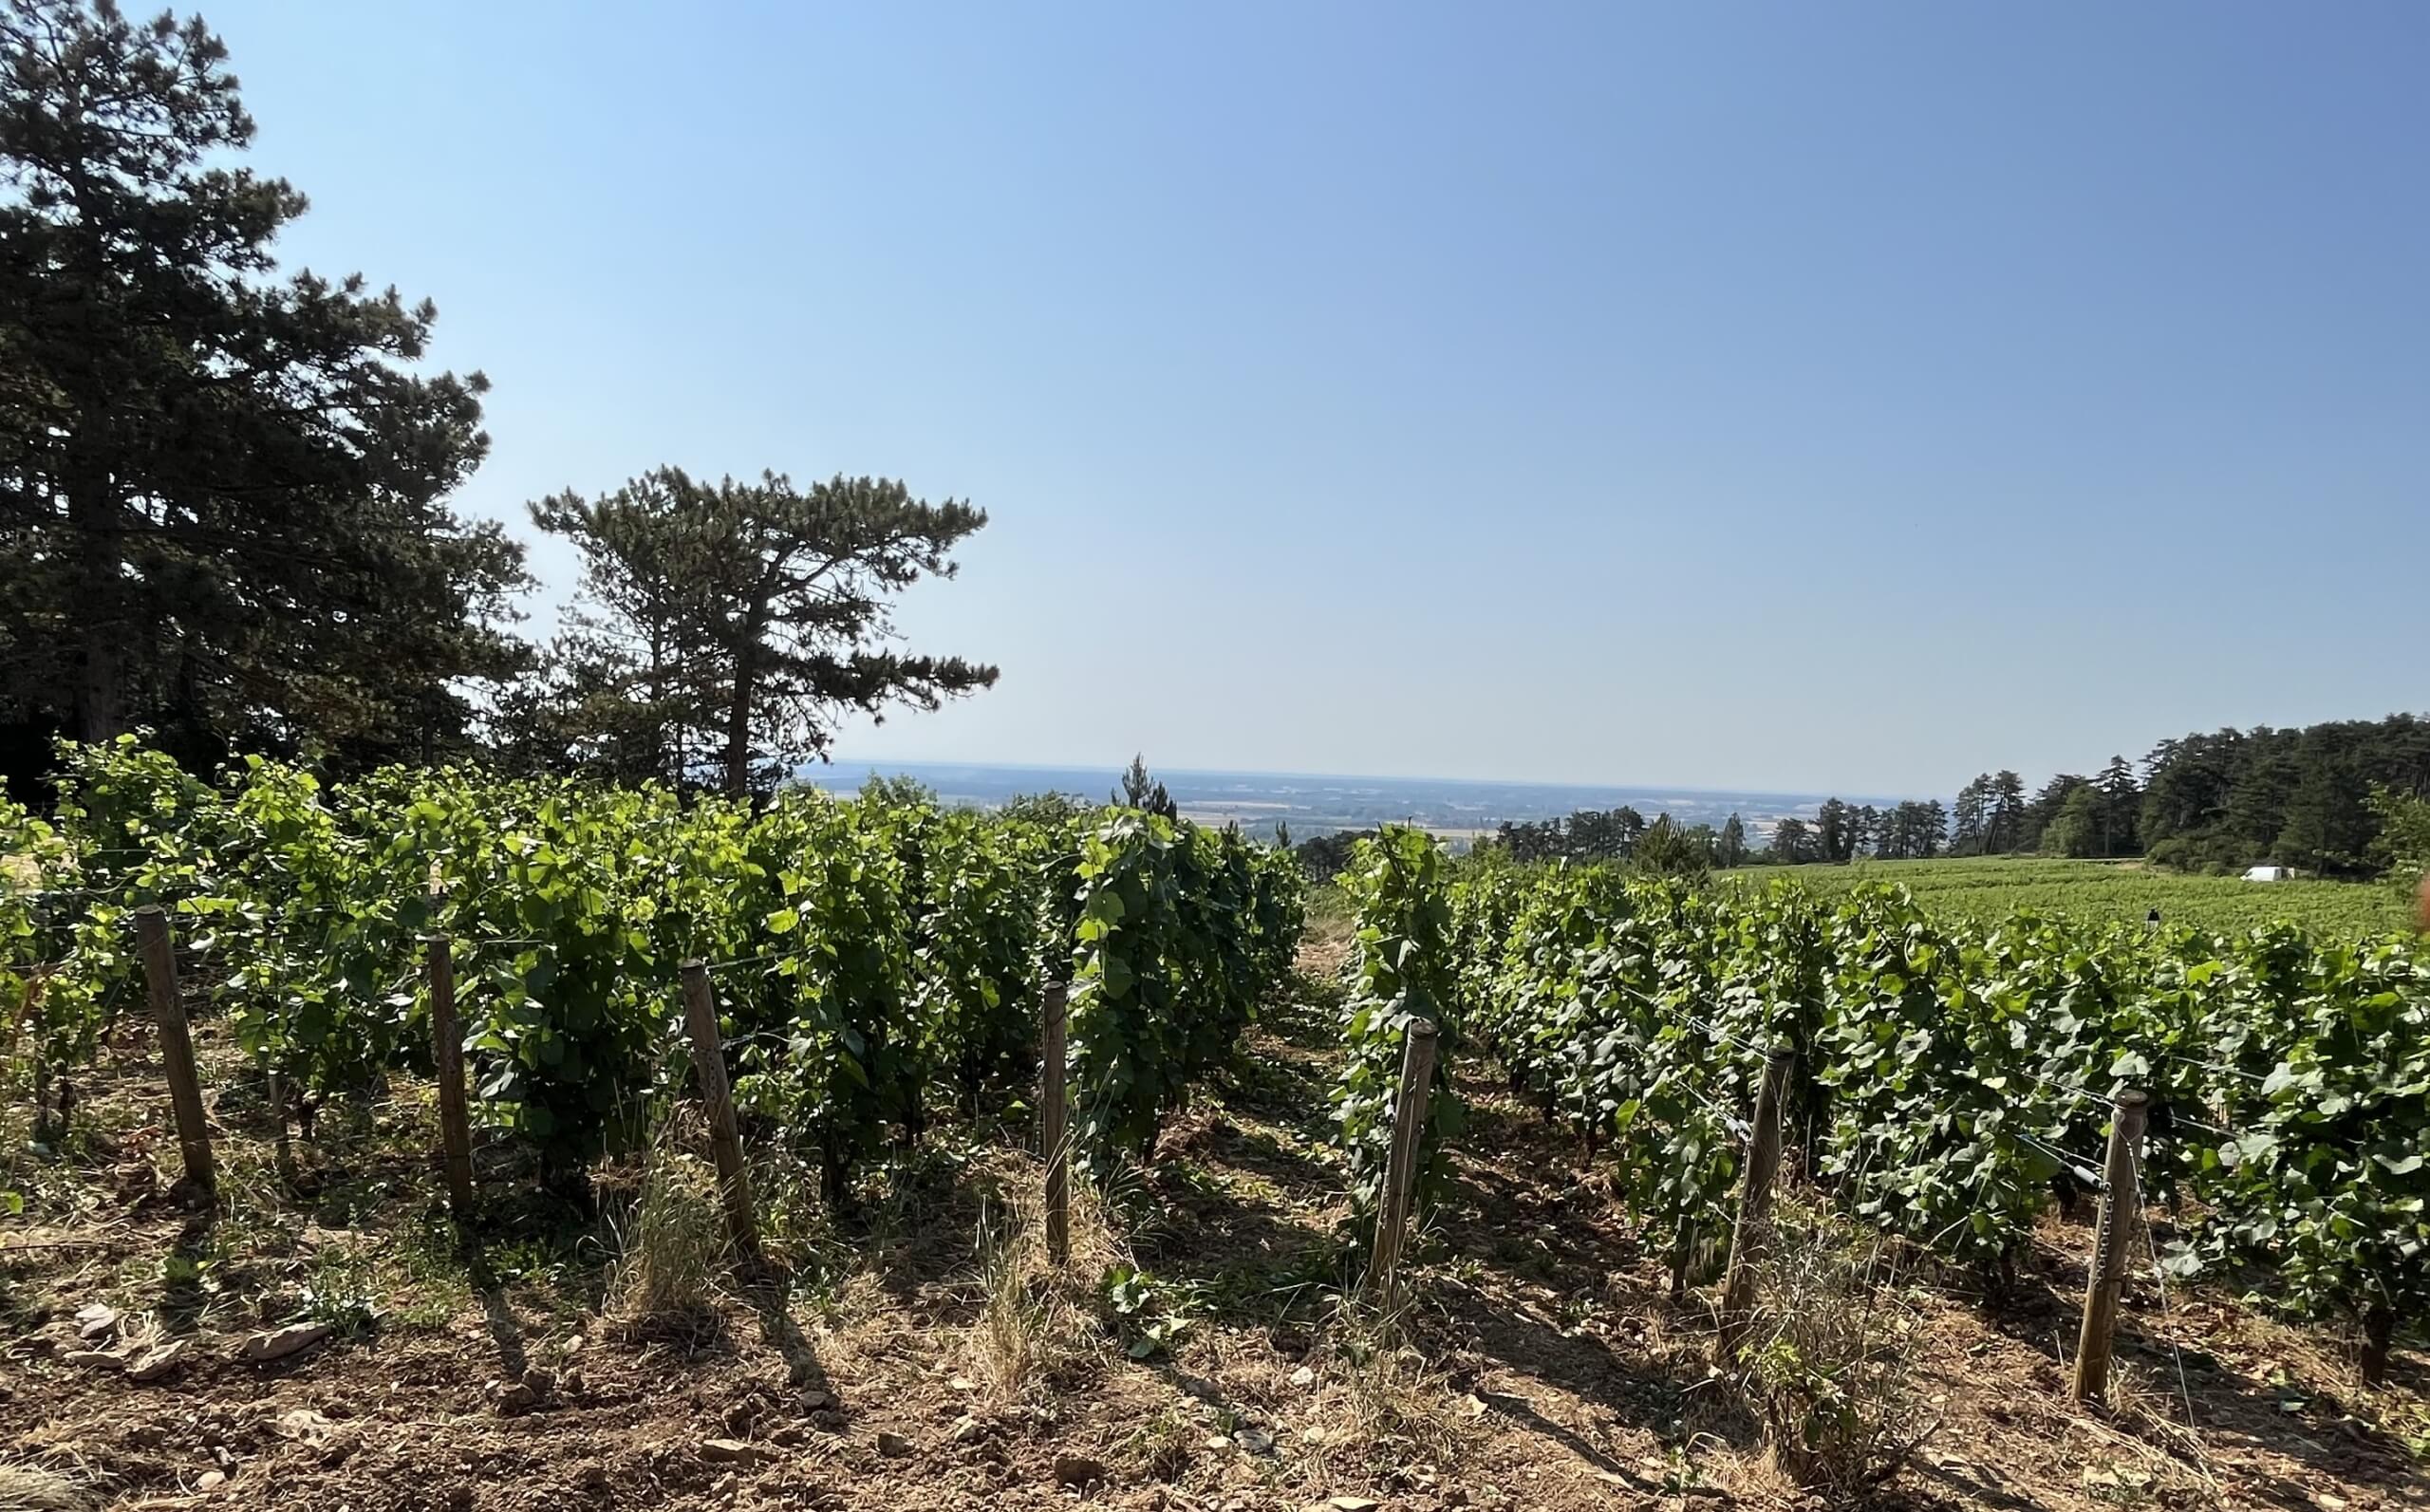 Wijngaarden Bourgondië